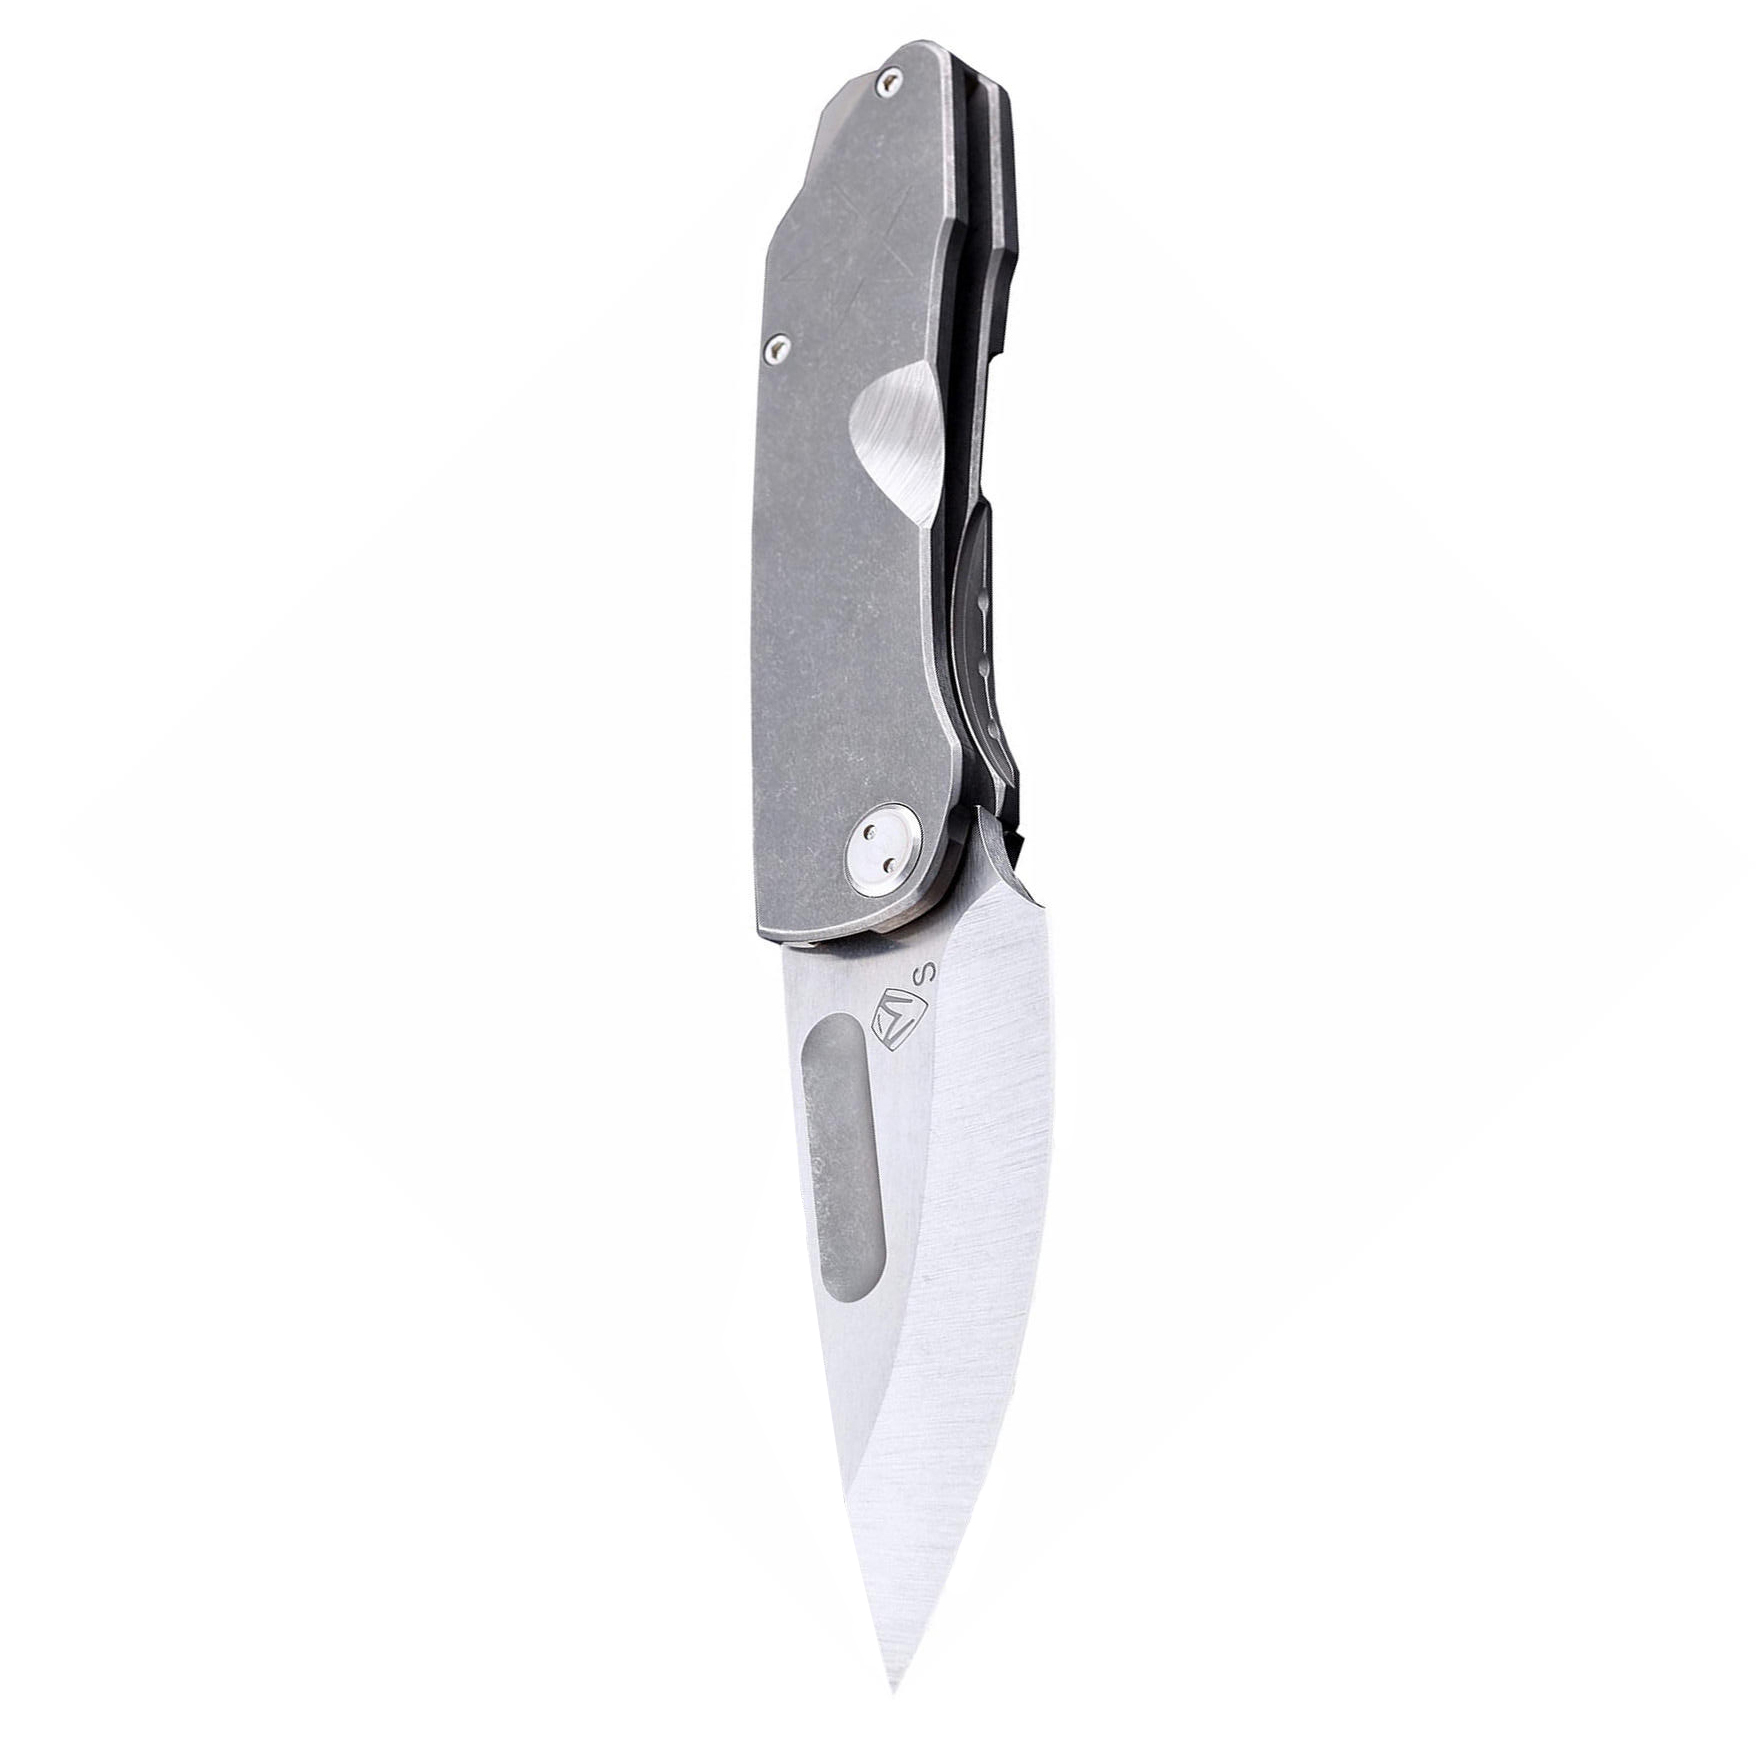 Складной нож Medford General, сталь S35VN, рукоять титановый сплав, серый от Ножиков